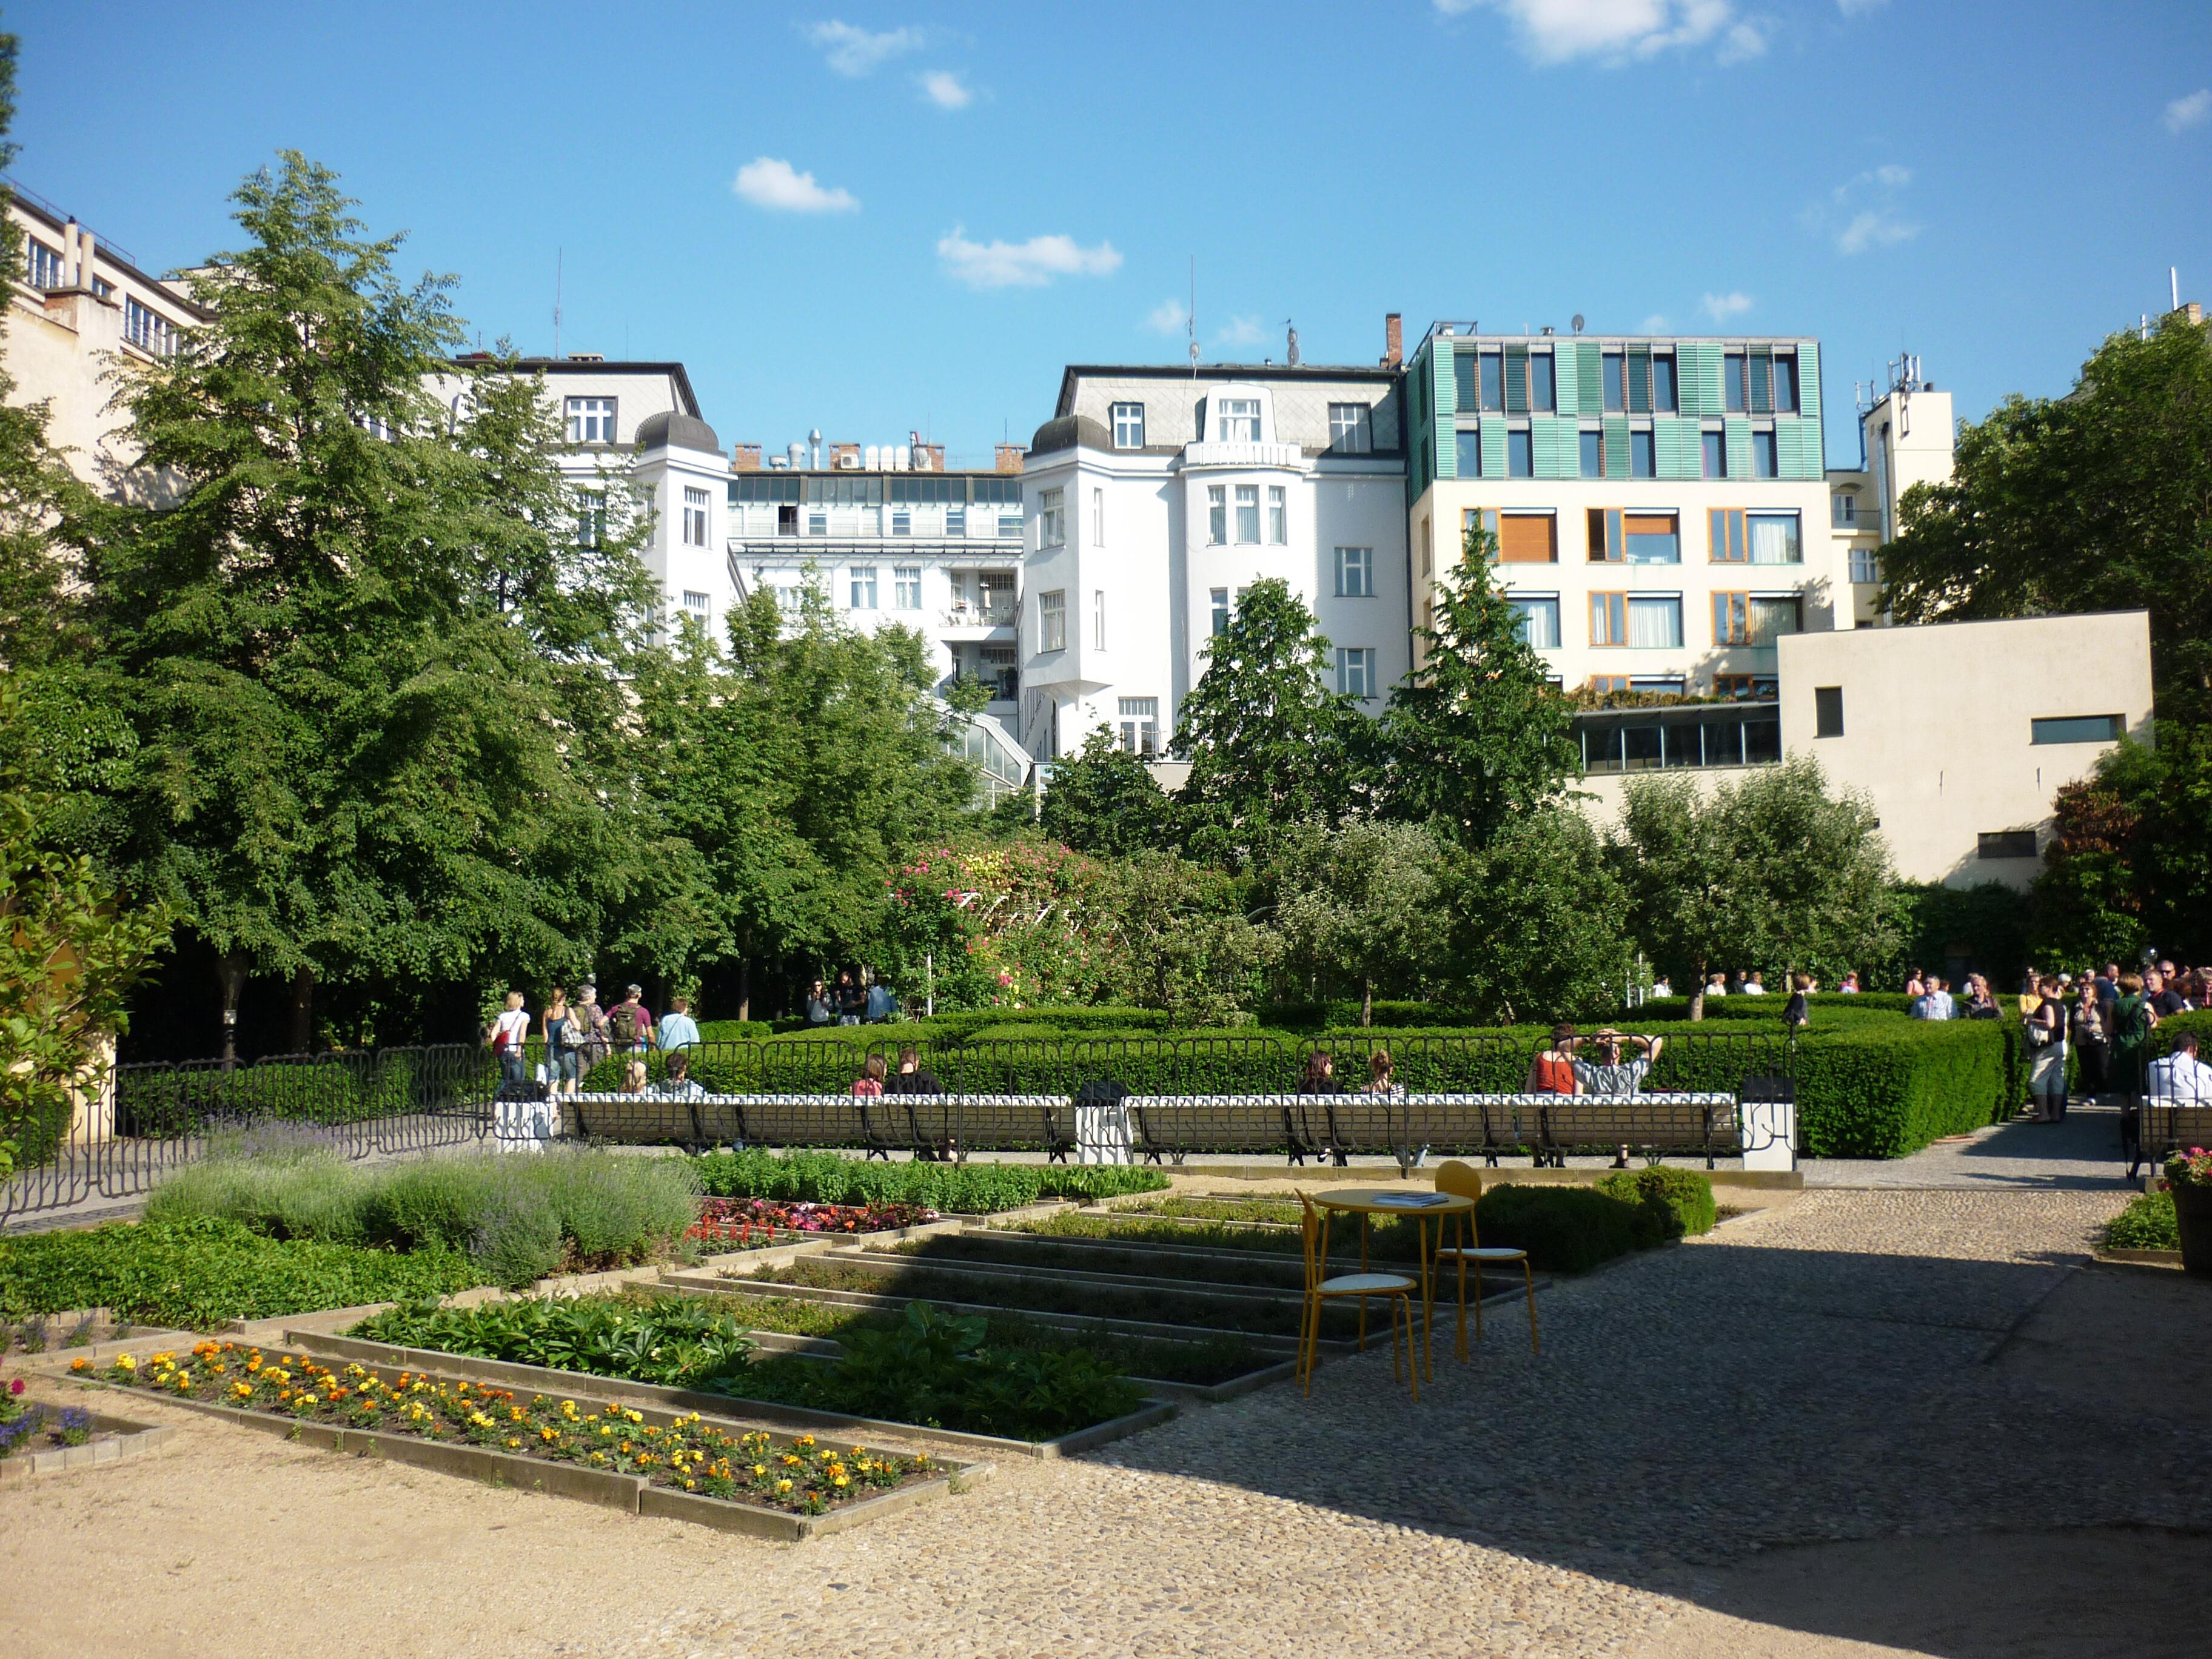 Cover image of this place Františkánská zahrada